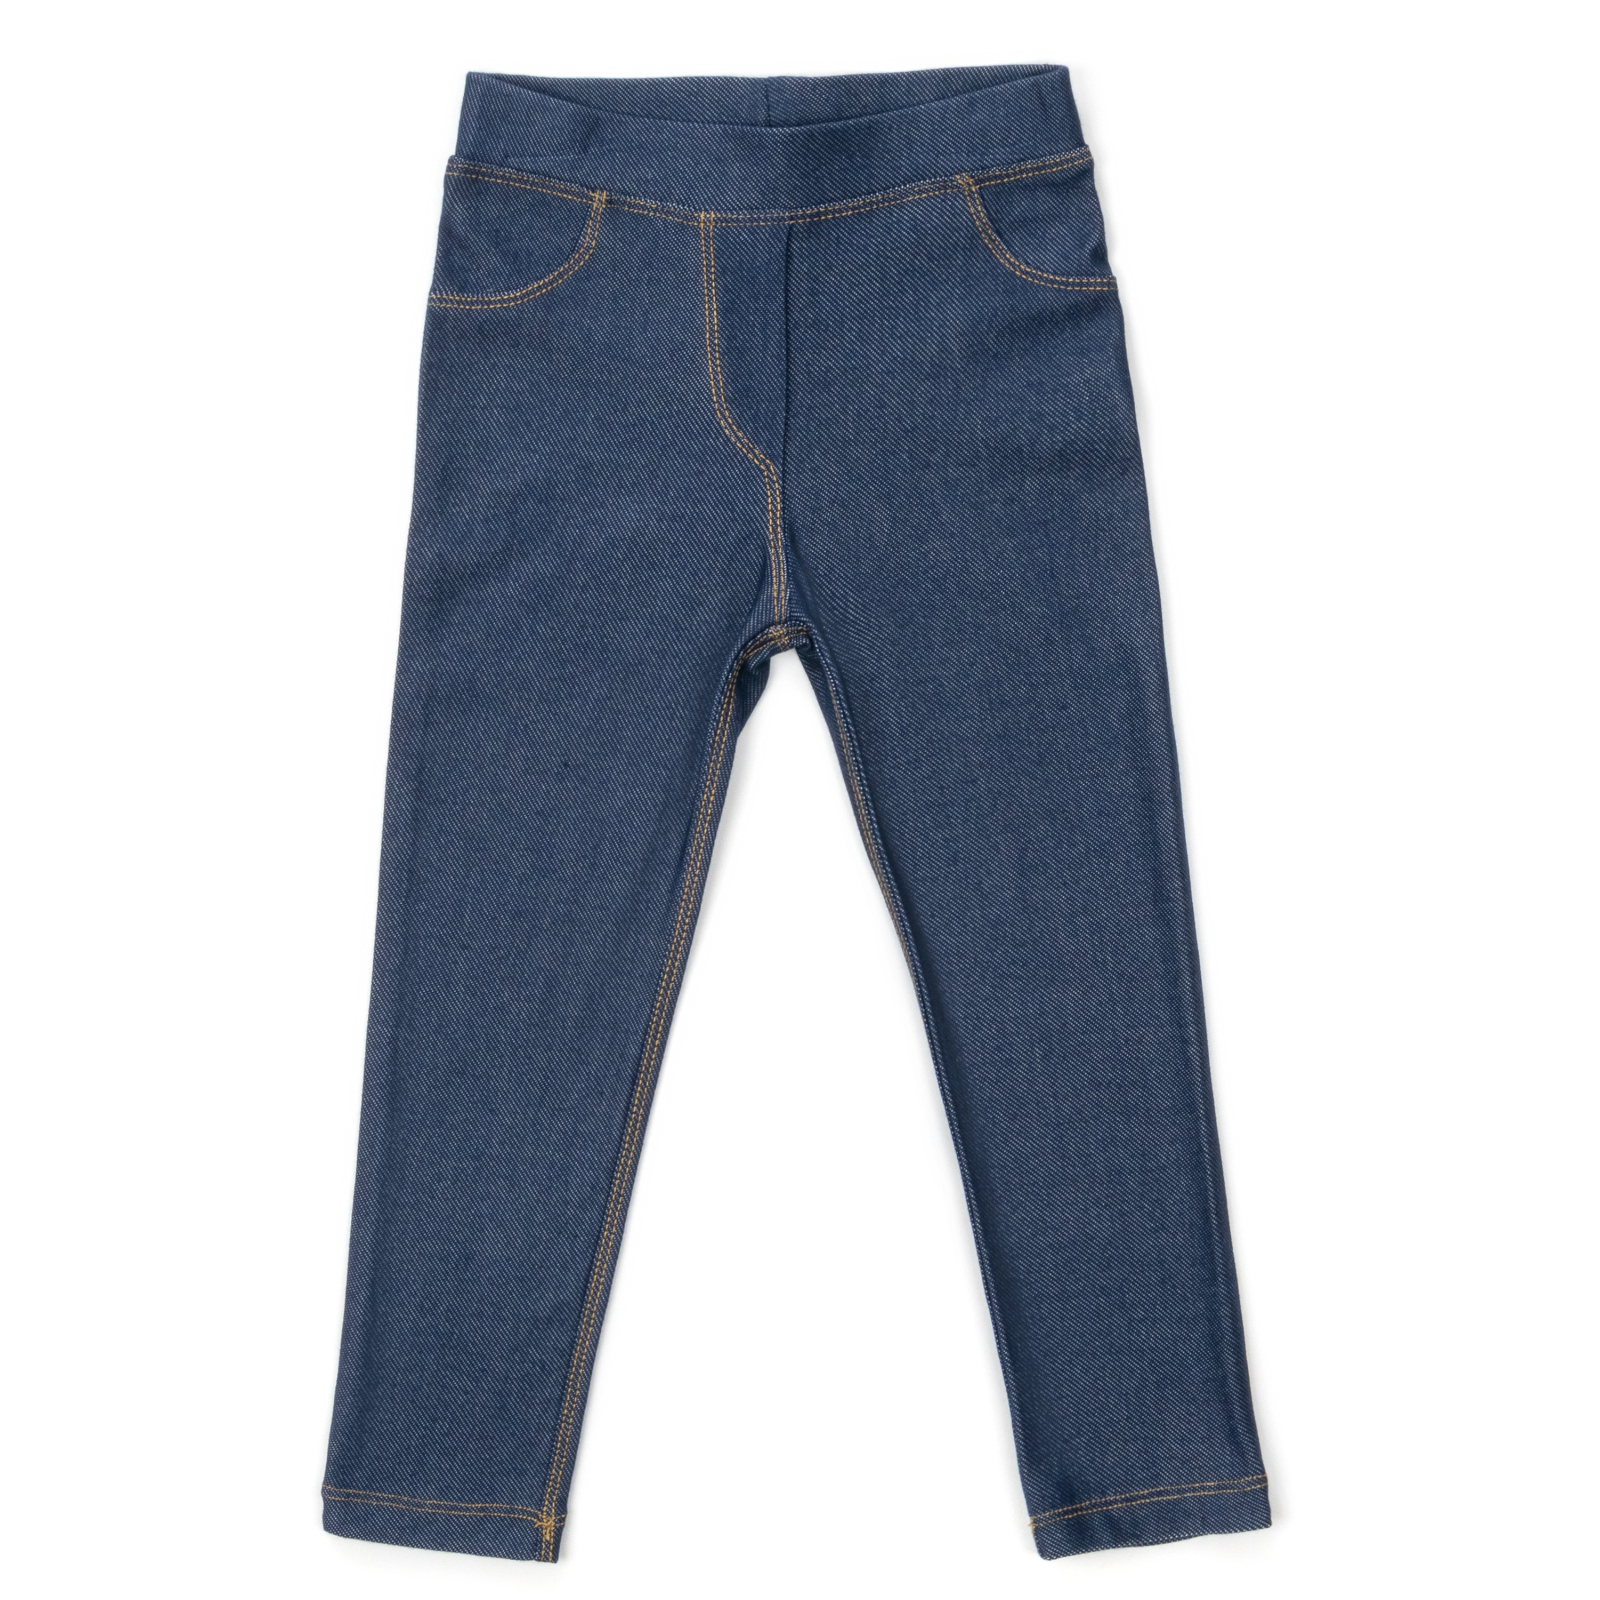 Лосини Breeze трикотажні (4415-104G-jeans)